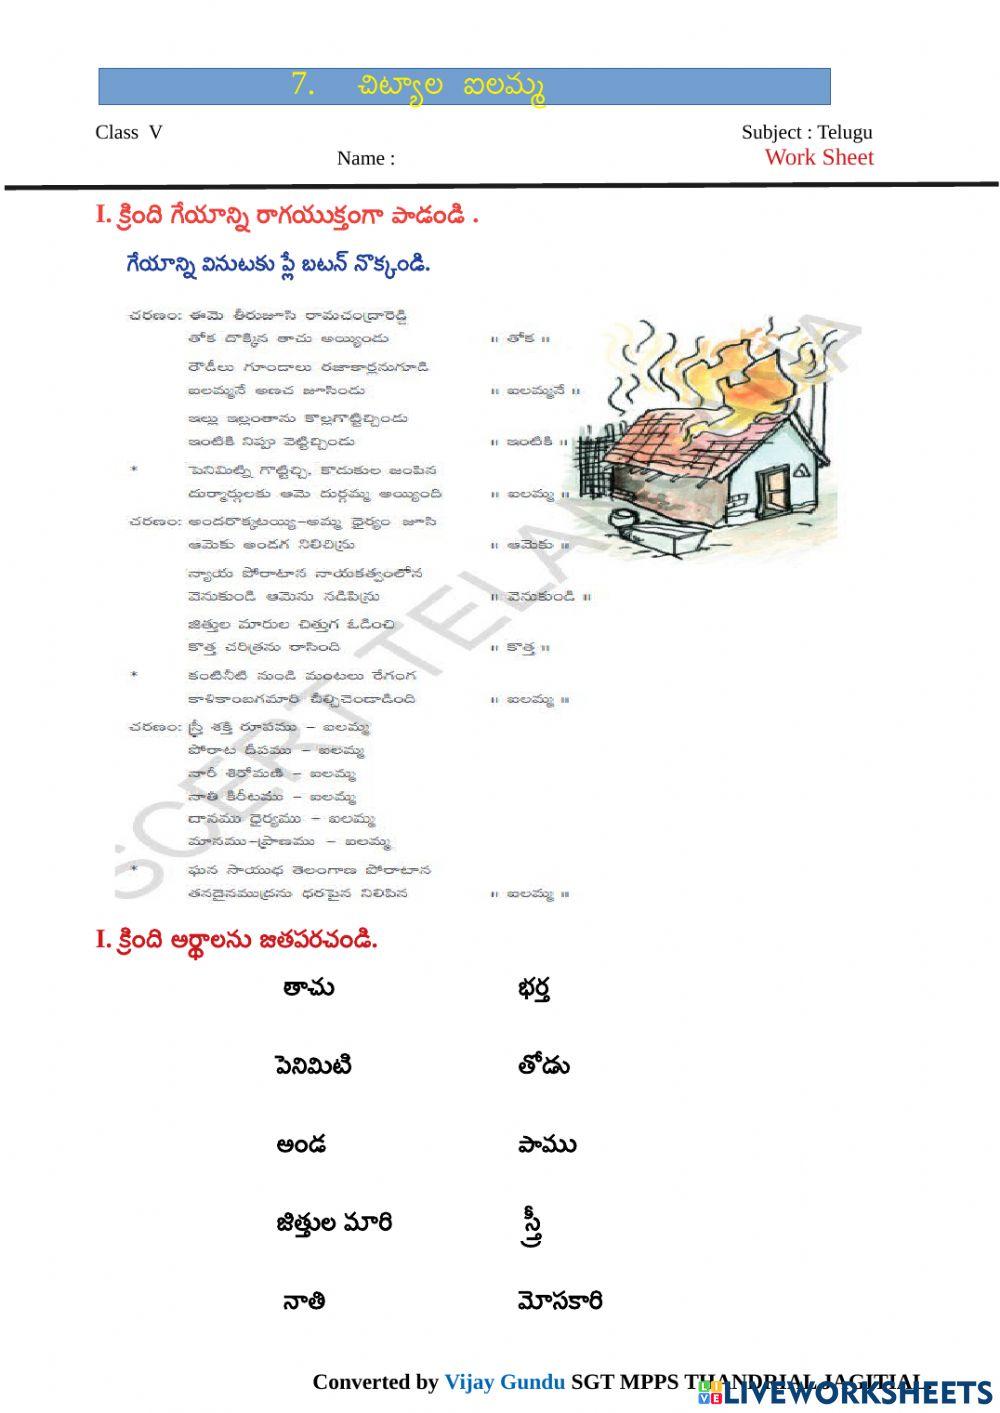 5th telugu chityala ilamma 5 by Vijay Gundu